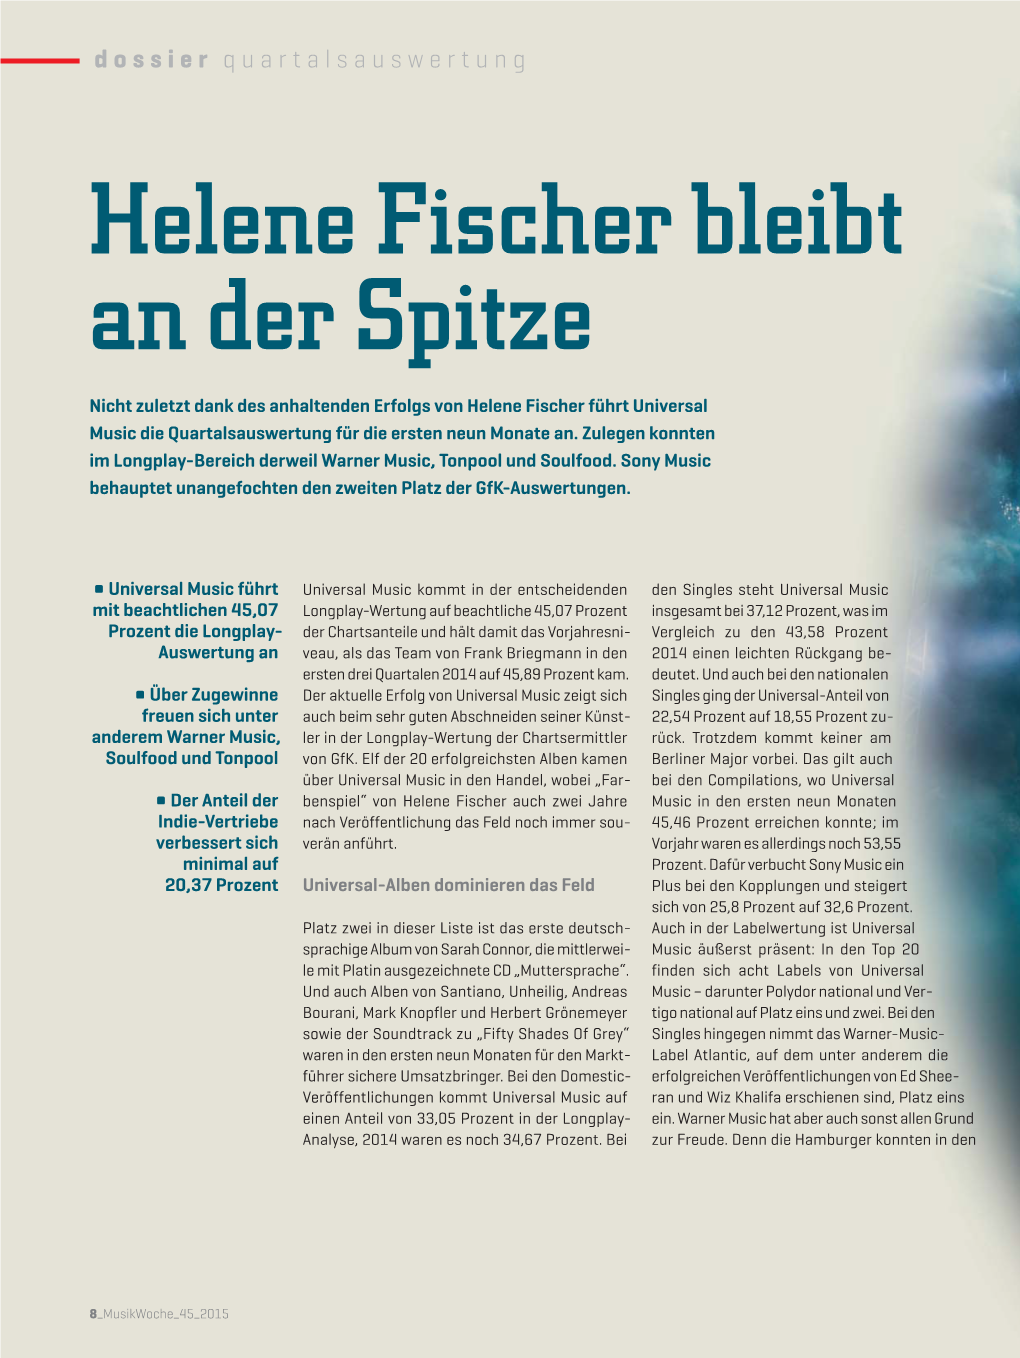 Helene Fischer Bleibt an Der Spitze